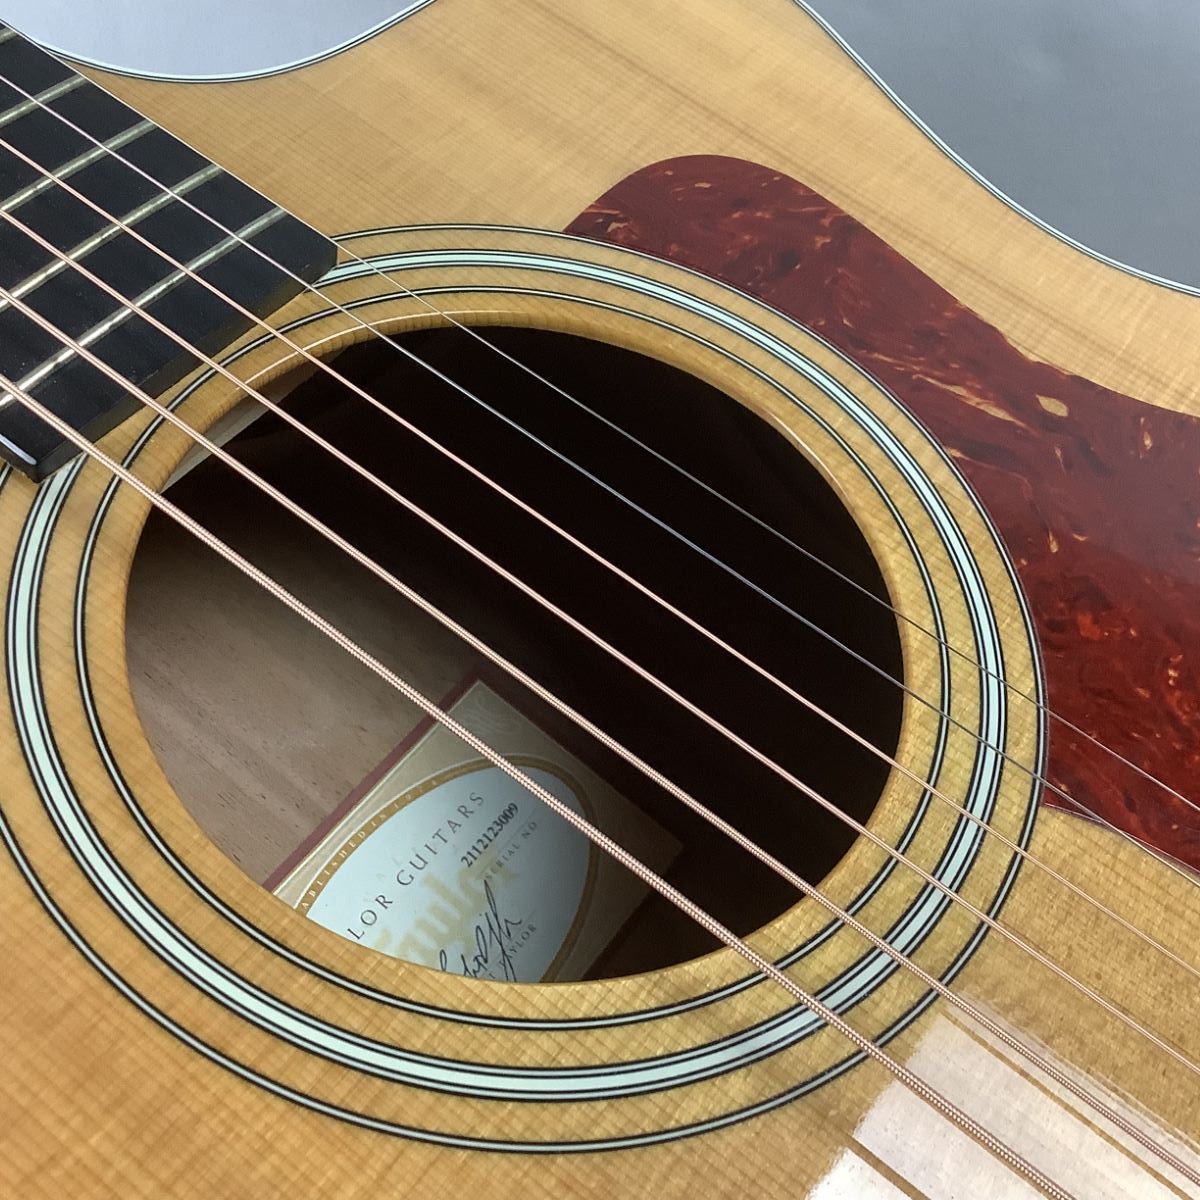 【WEB限定】 【極美品】Taylor 純正ハードケース付き エレアコ DLX 214ce アコースティックギター